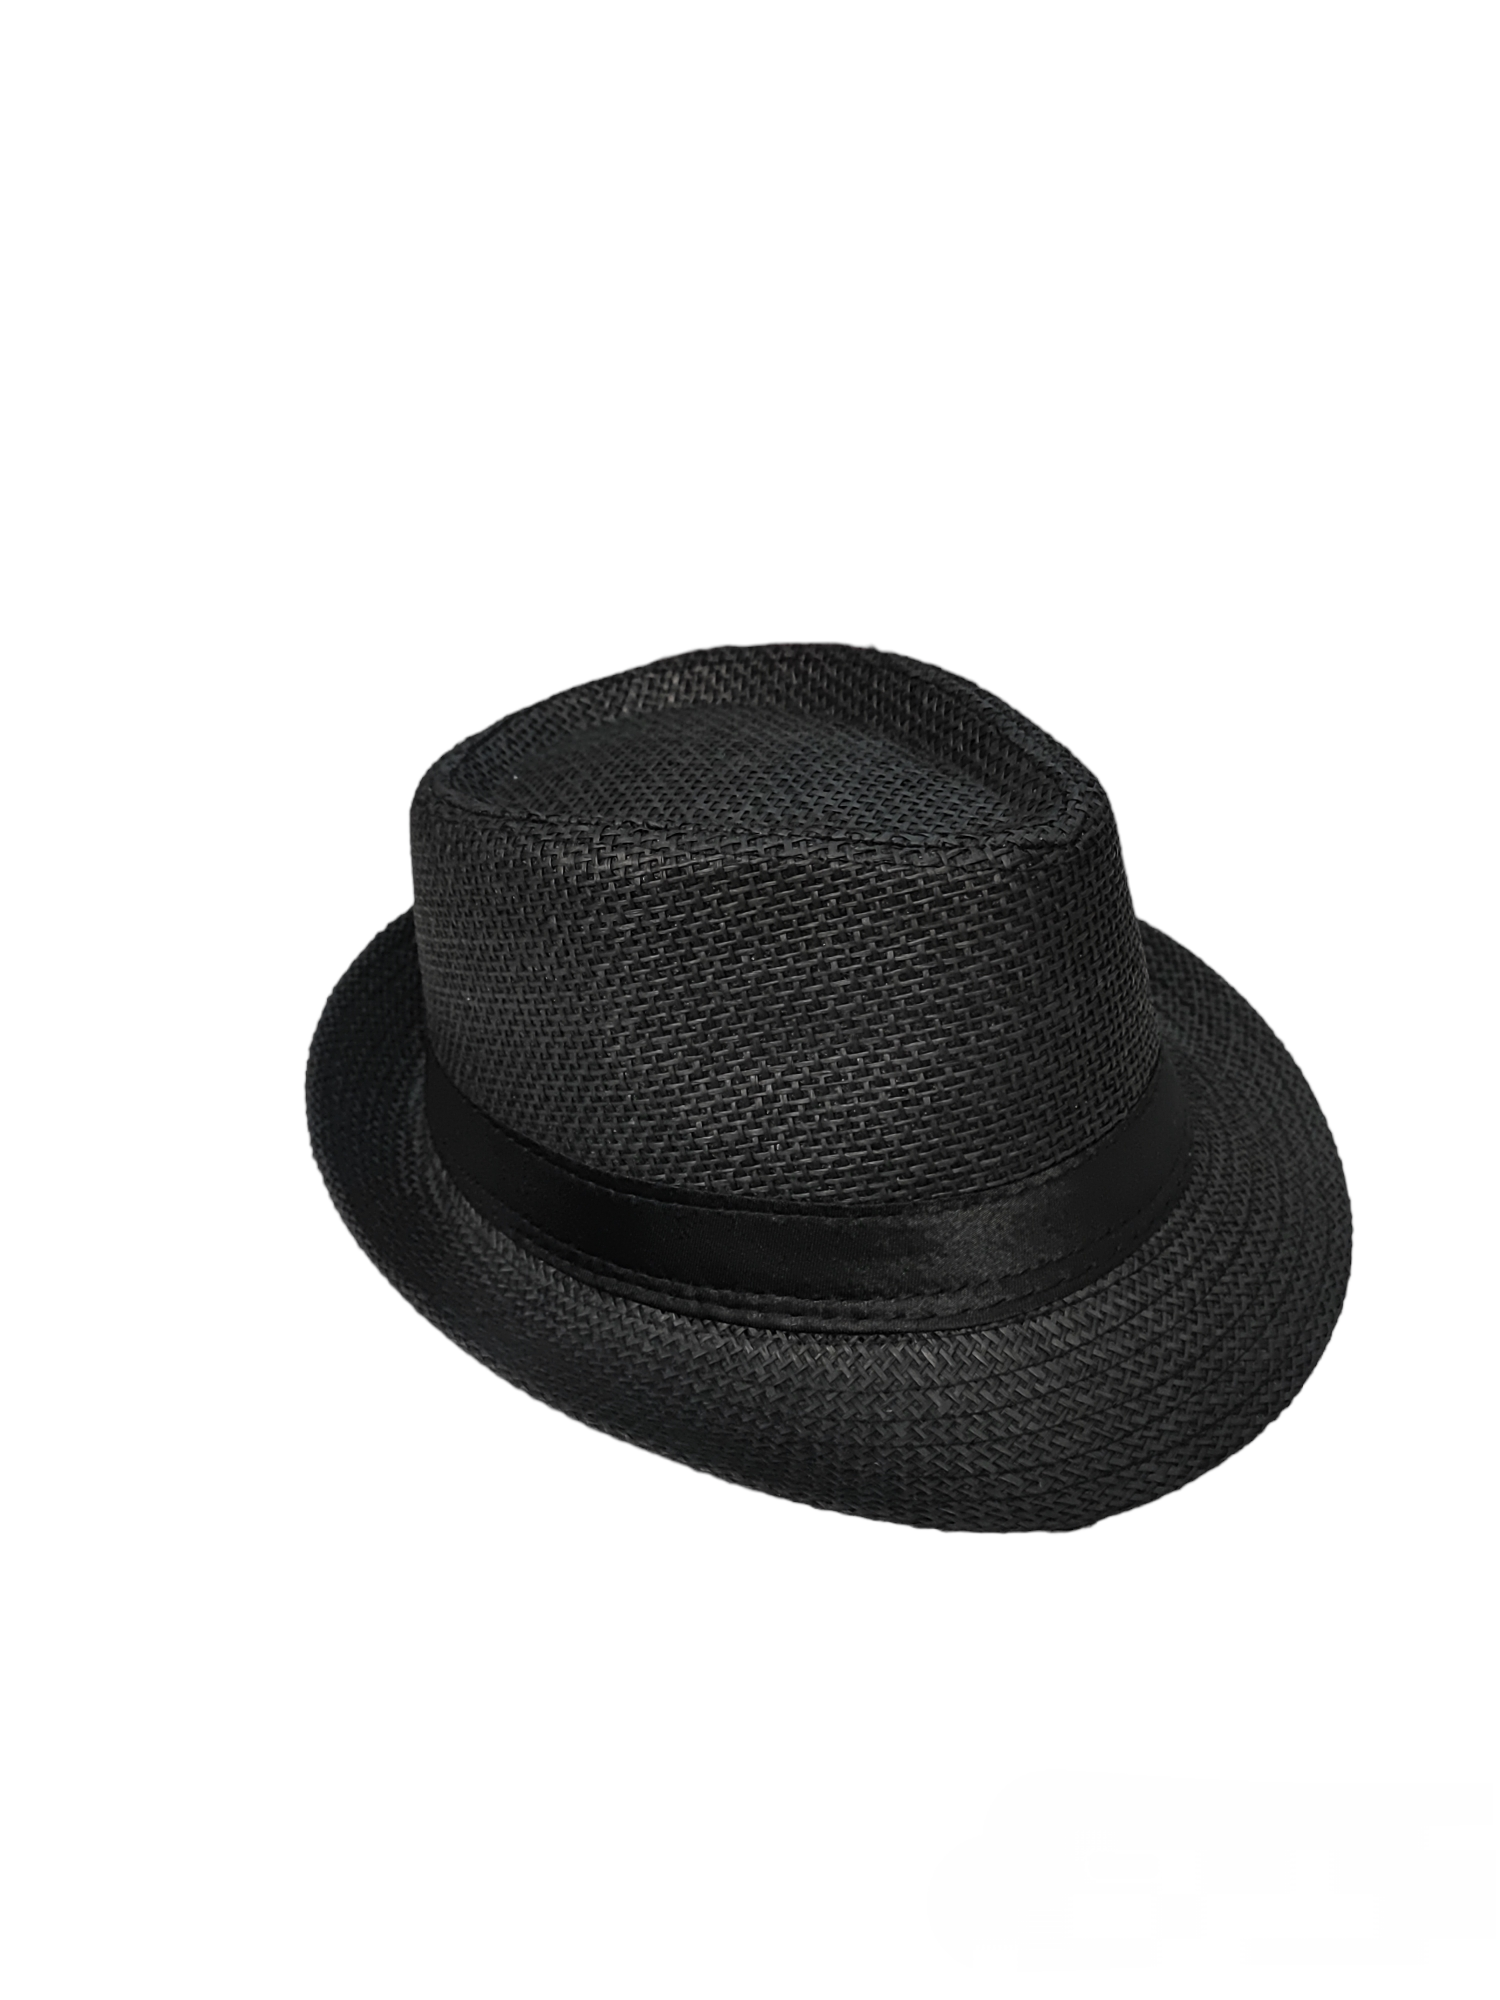 Chapeau de paille trilby borsalino (x12)#2303